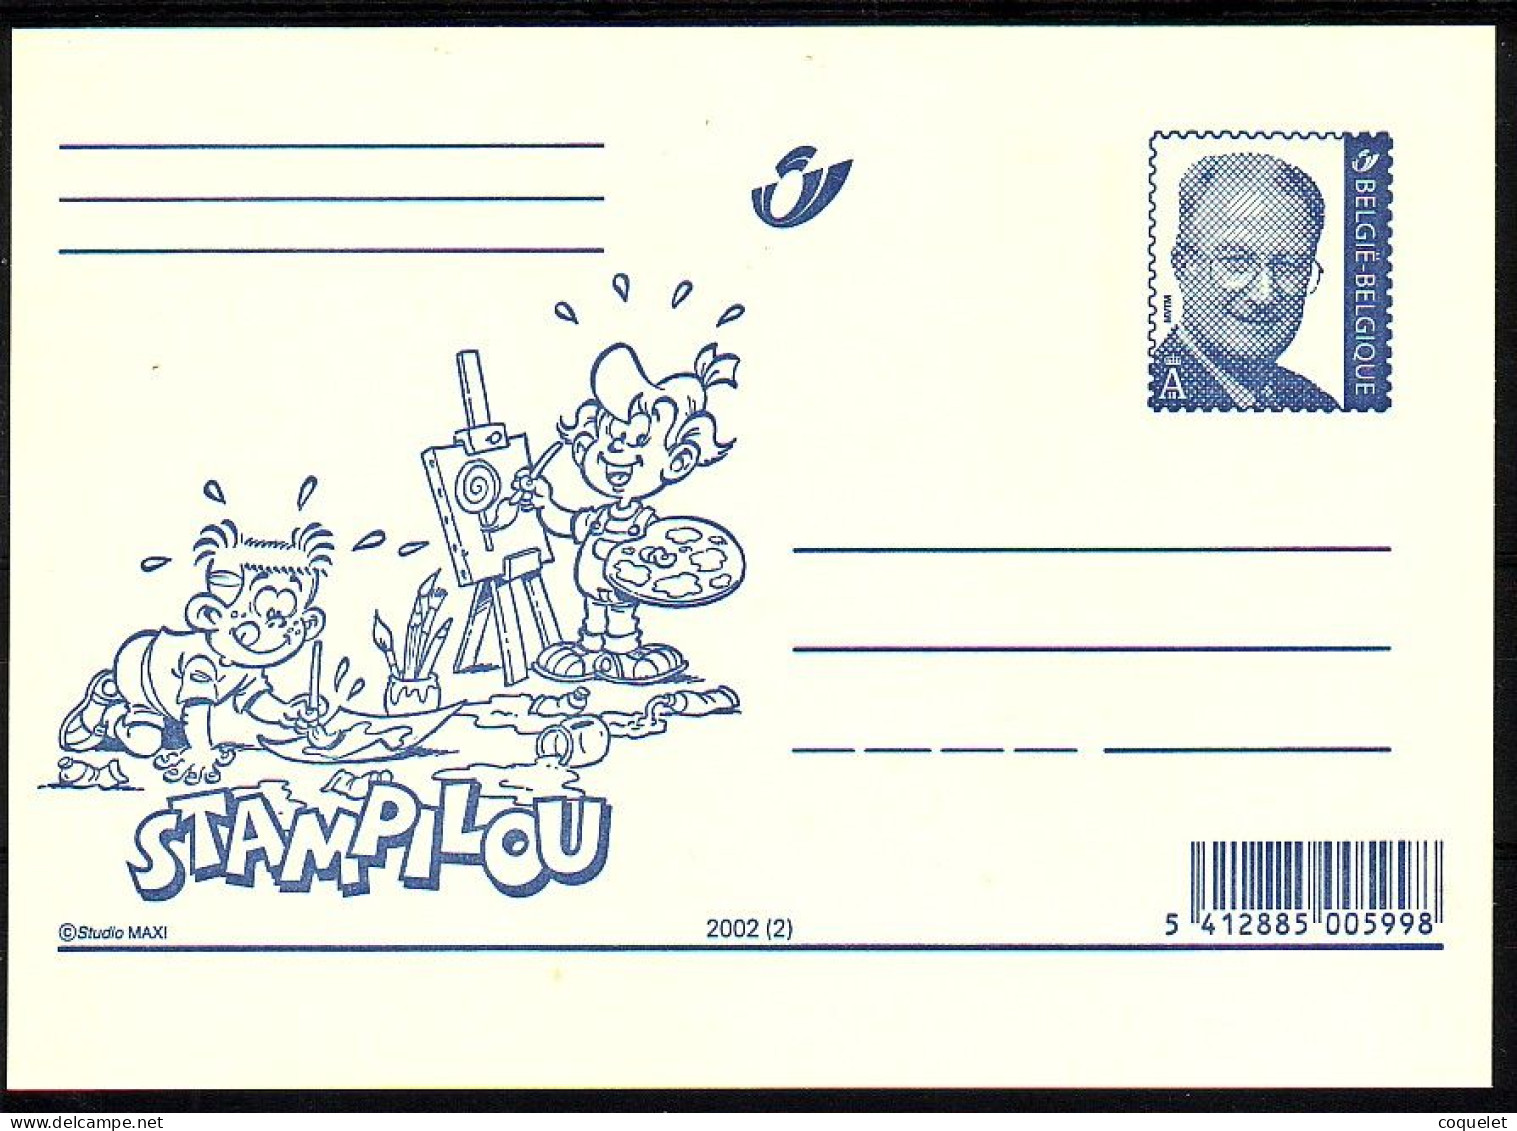 Belgique - Entiers Postaux - Cartes Illustrées N° 82 # STAMPILOU  2 - Bandes Dessinées